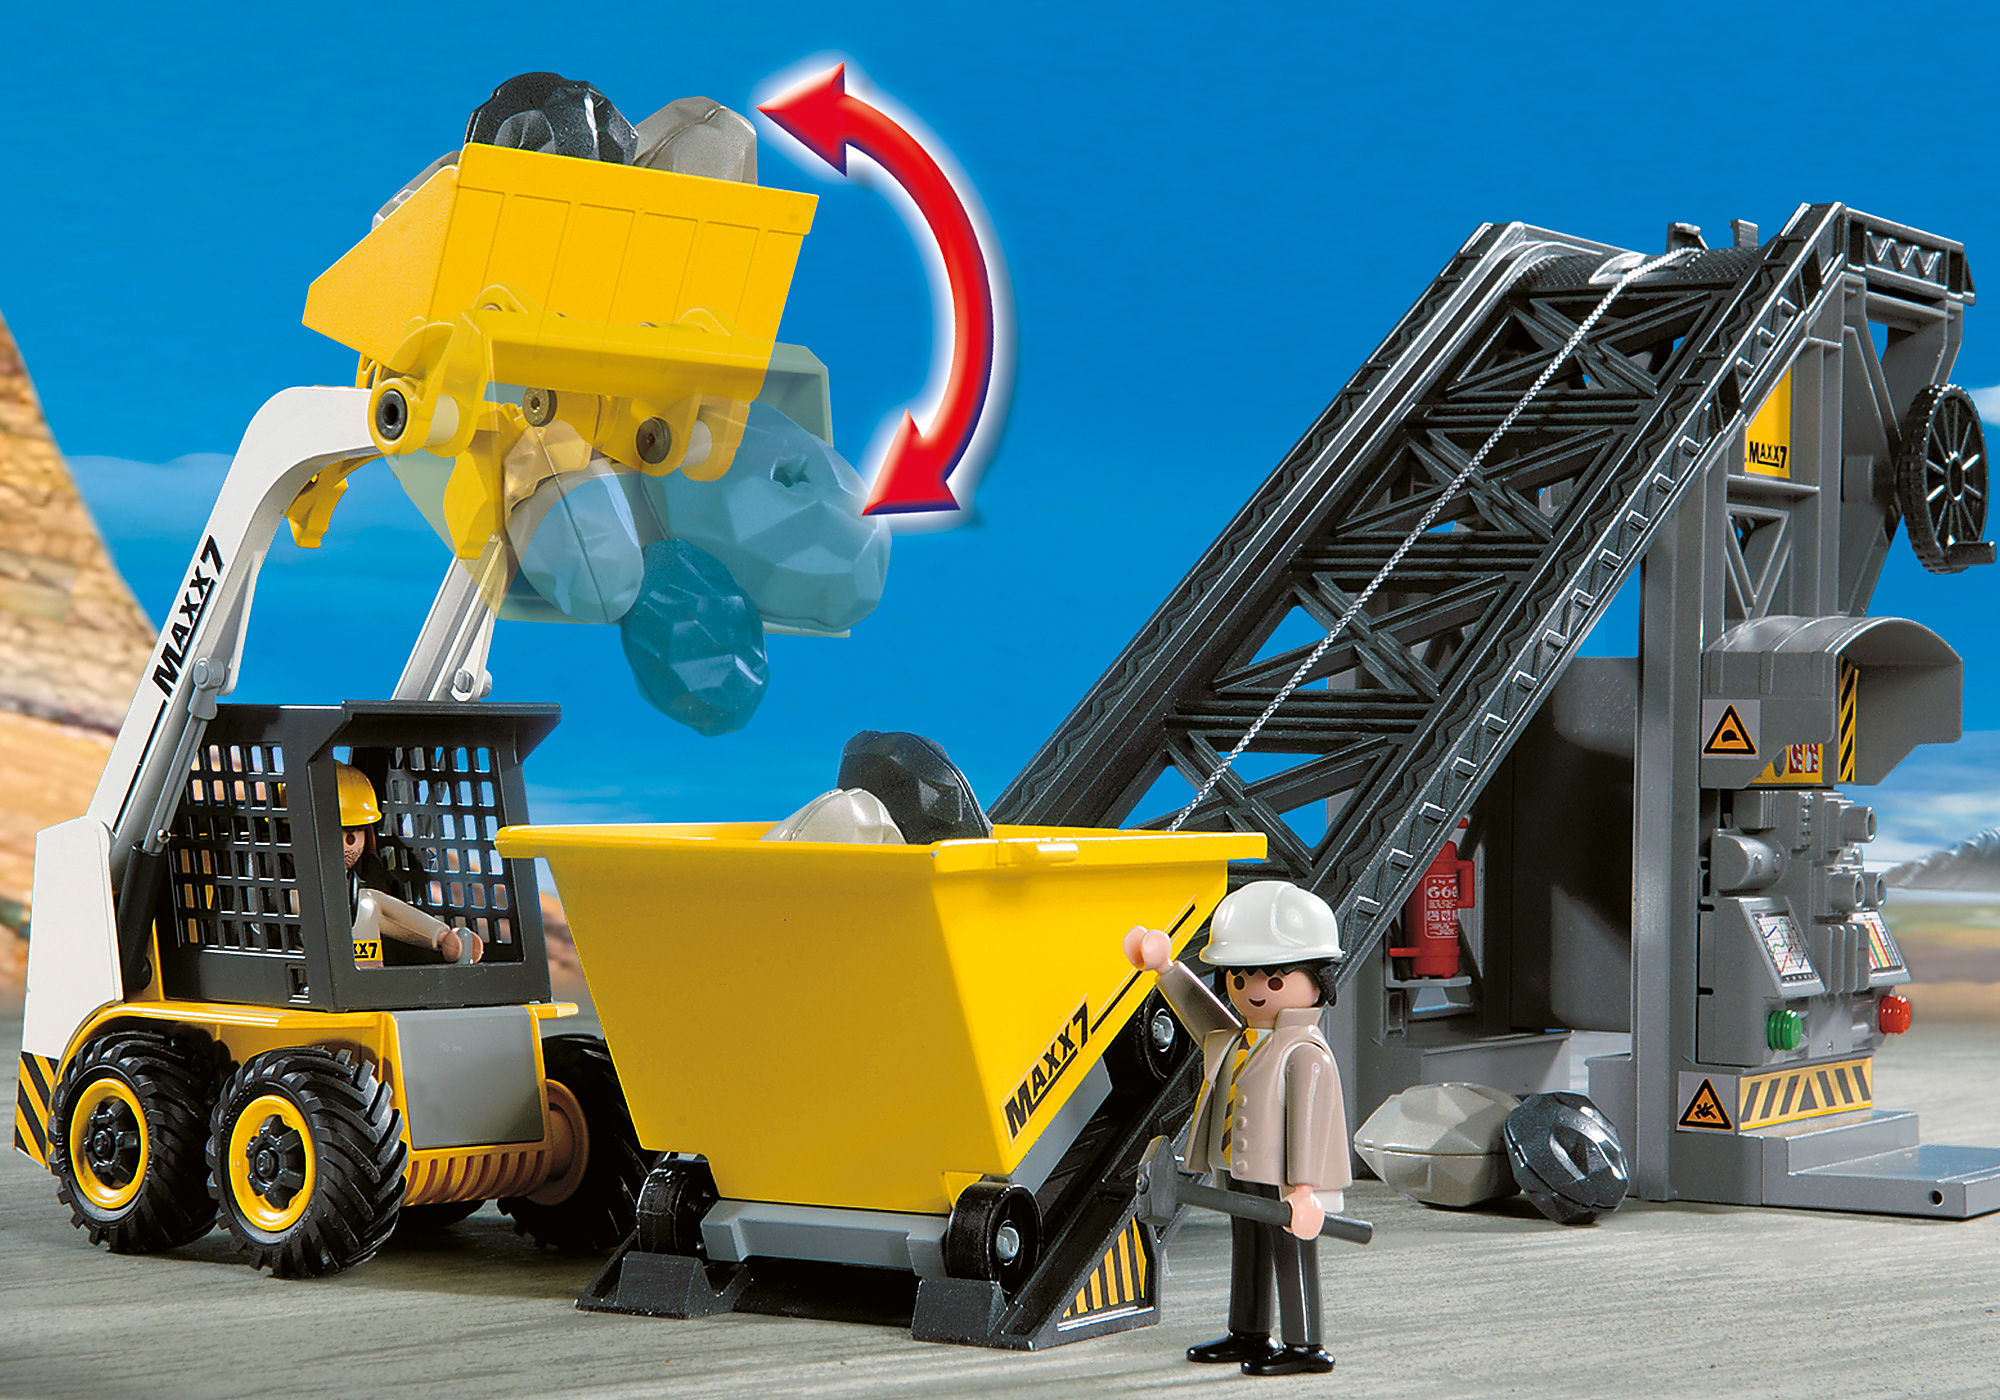 Conveyor Belt with Mini Excavator - 4041 | PLAYMOBIL®